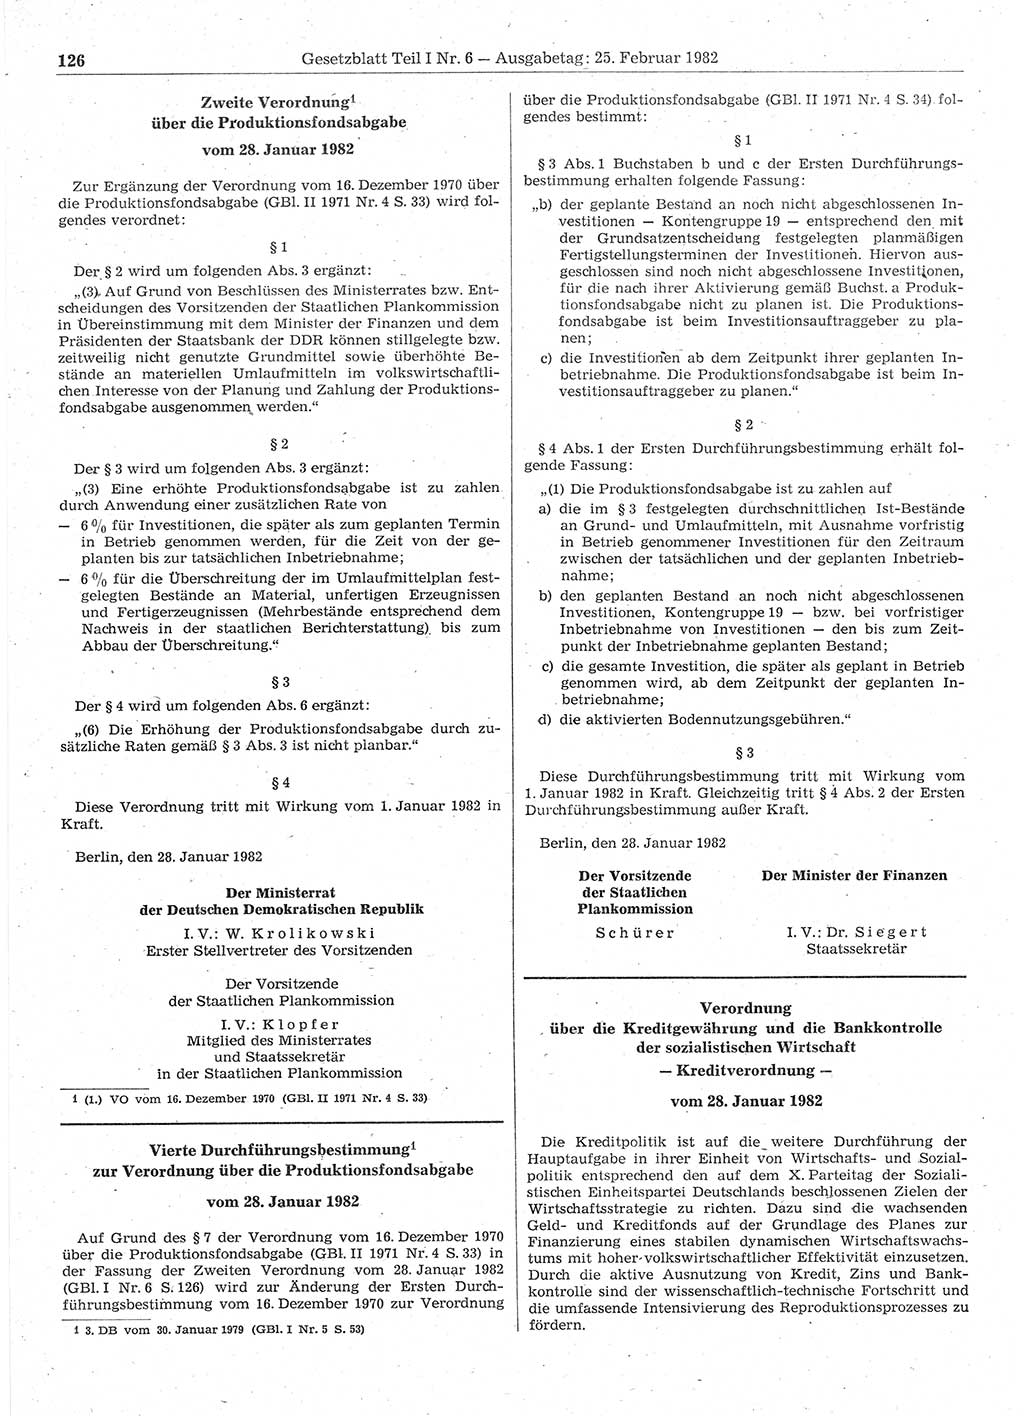 Gesetzblatt (GBl.) der Deutschen Demokratischen Republik (DDR) Teil Ⅰ 1982, Seite 126 (GBl. DDR Ⅰ 1982, S. 126)